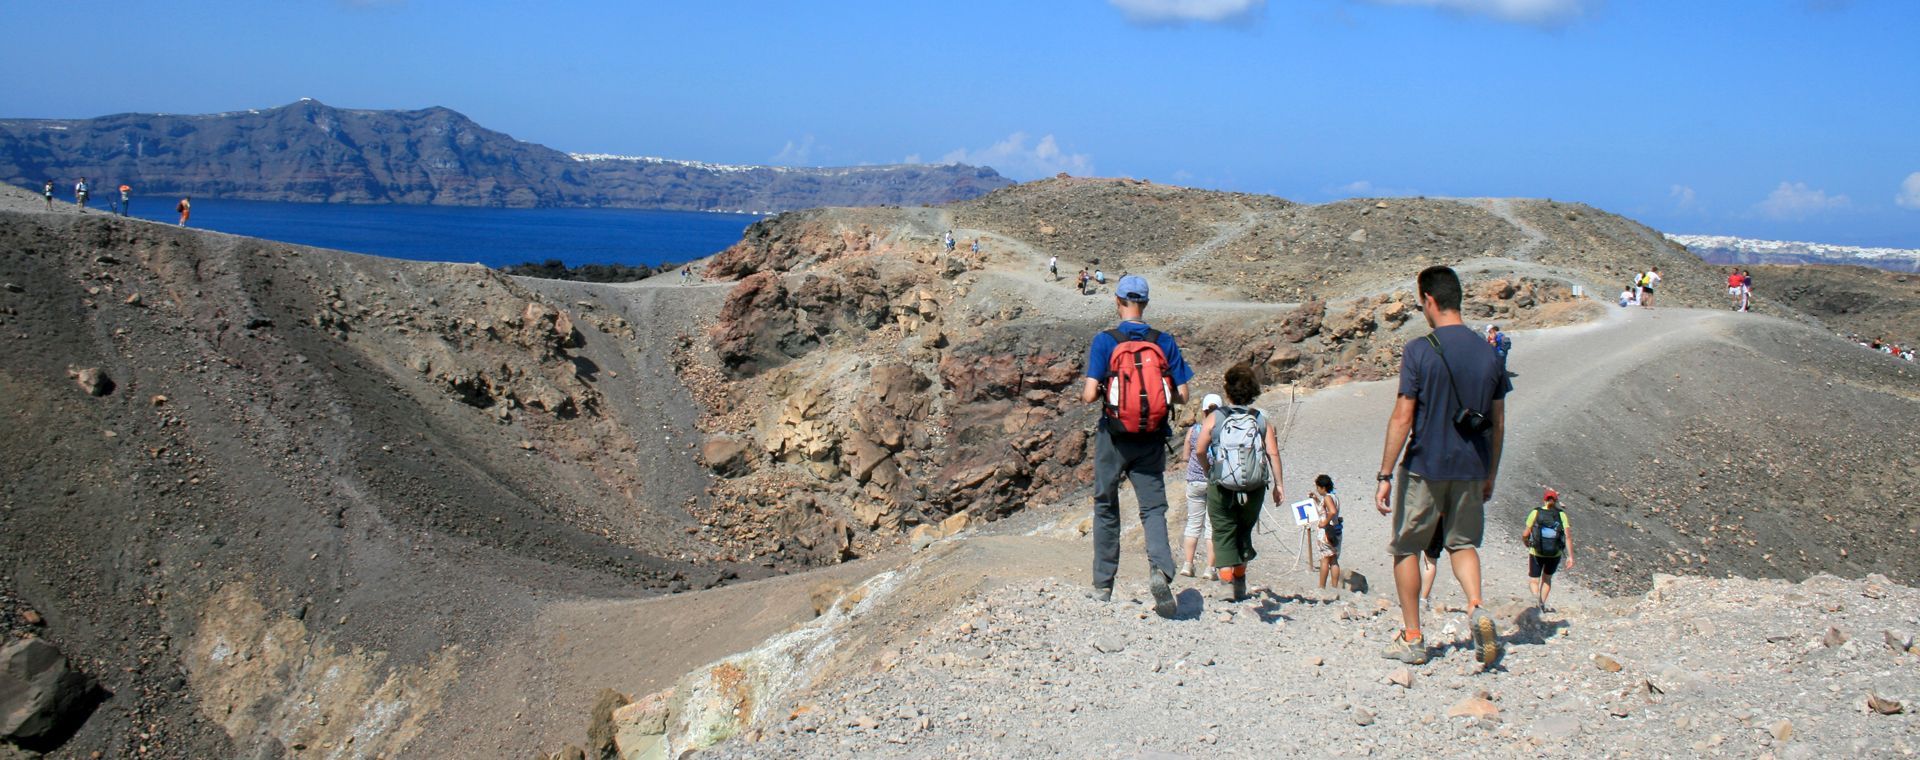 Randonneurs sur l'île de Thirasia dans les Cyclades